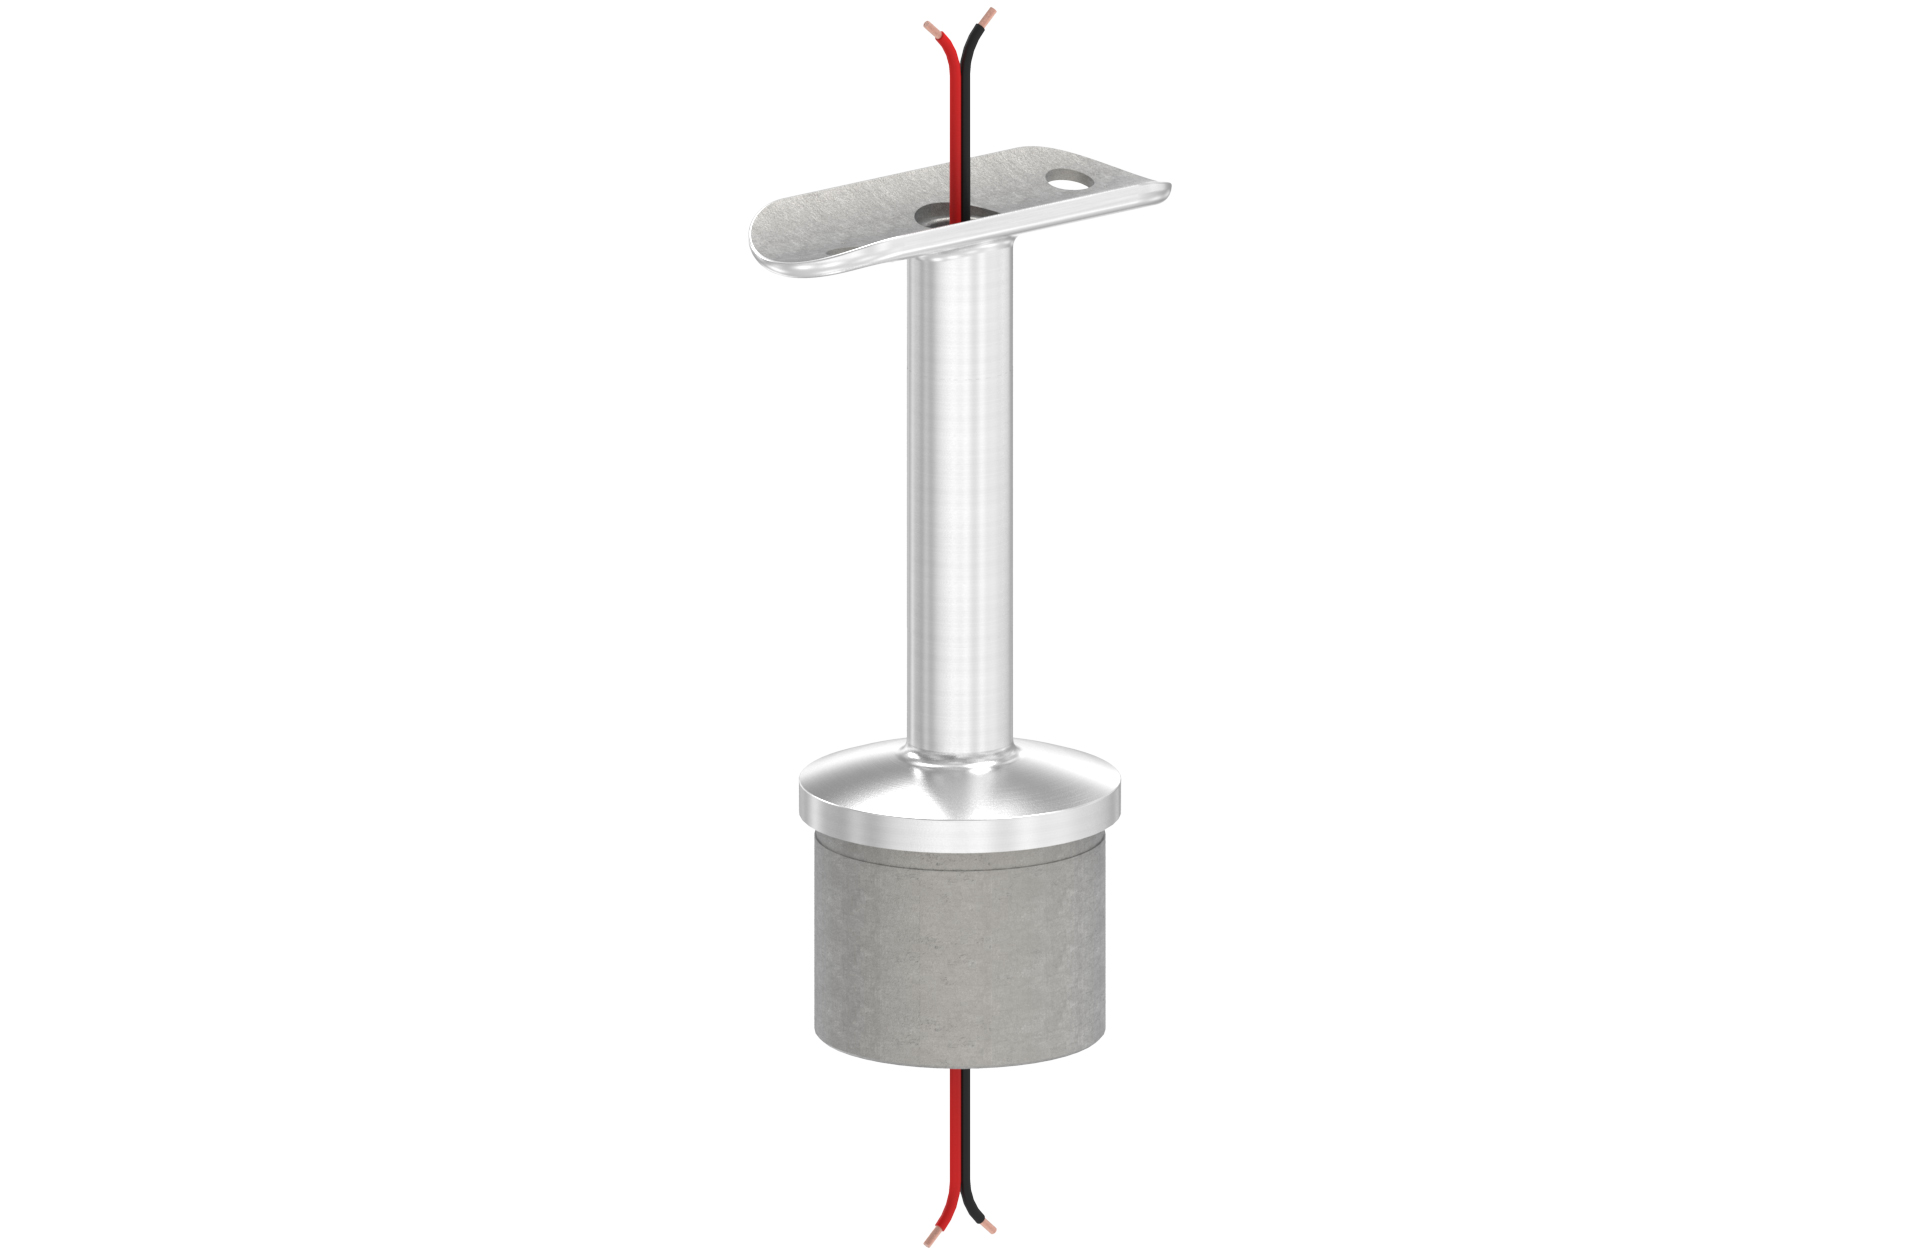 Handlaufträger für LED-Handlauf mit fixem Stift und Trägerplatte für Rohr d=42,4x2mm AISI 304 geschl